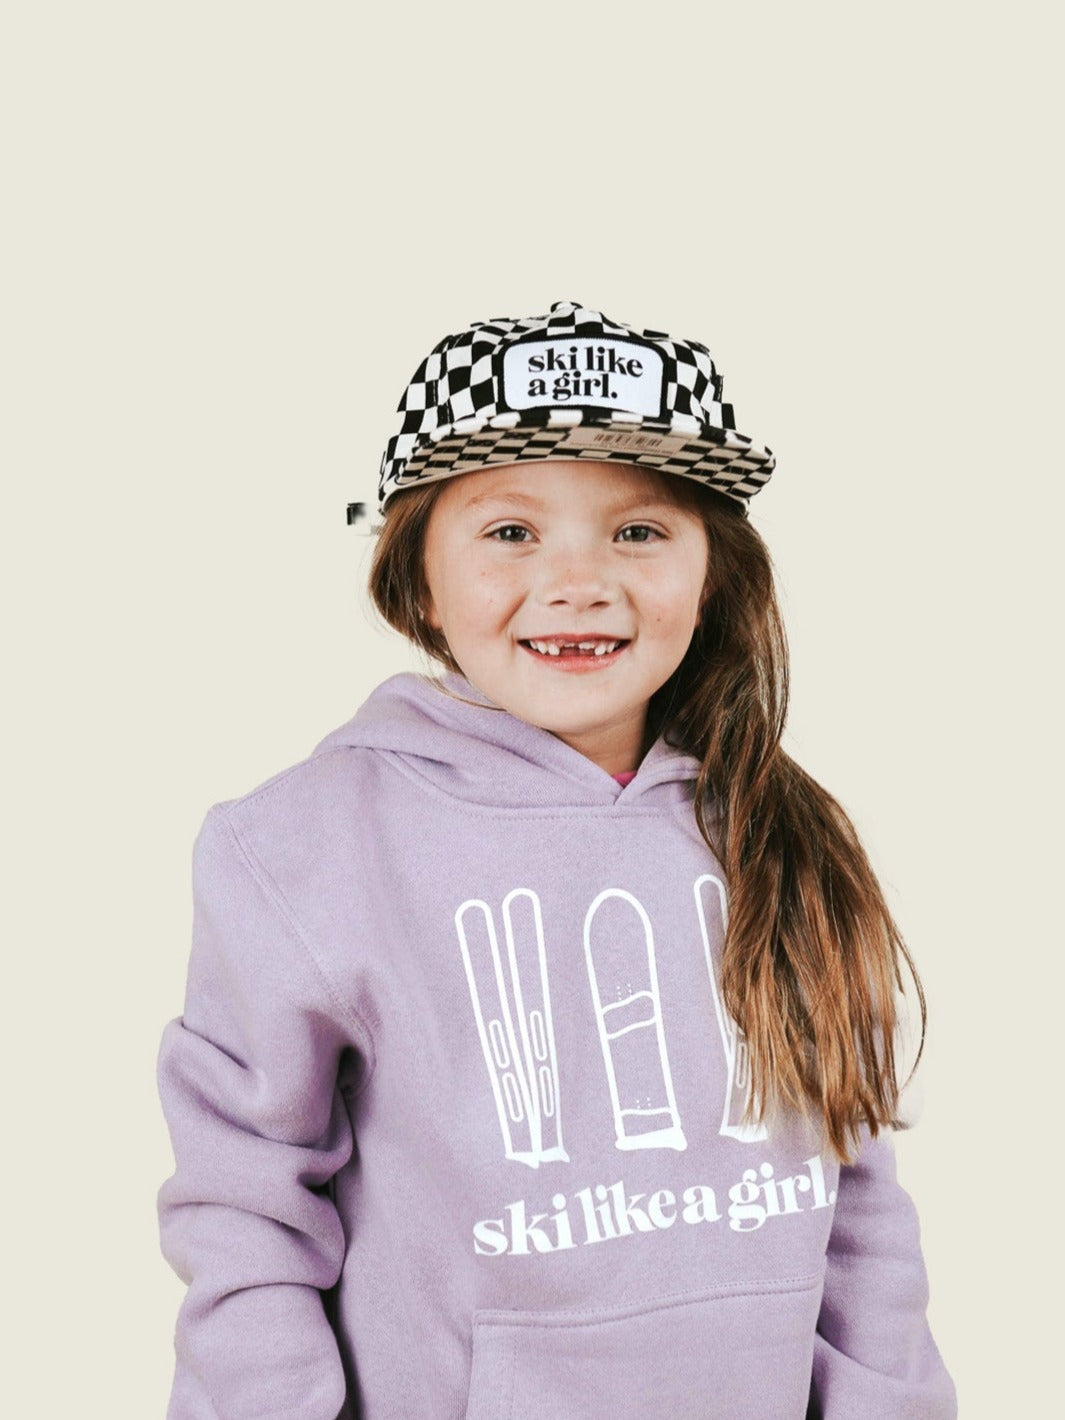 Ski Like a Girl Kids Black Checkerboard Hat - Heyday